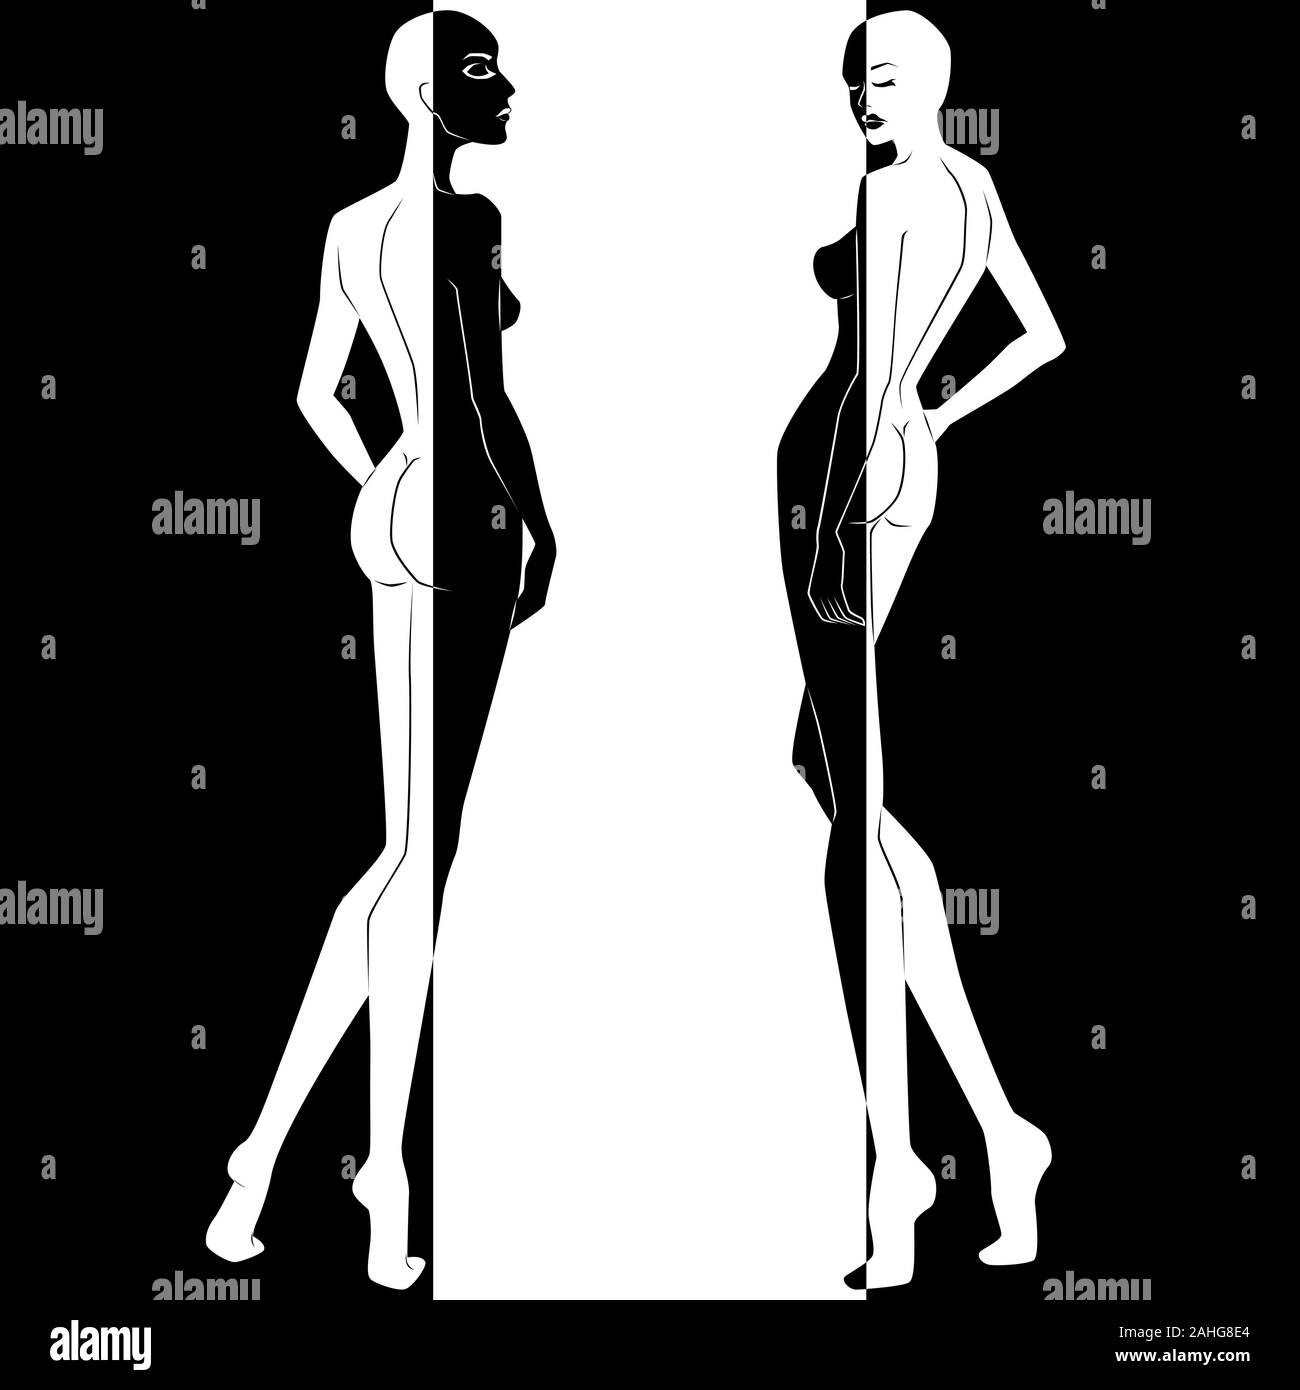 Zusammenfassung von zwei elegante Frau Split in negativen und positiven Raum, Schwarze und Weiße konzeptionelle Ausdruck, hand Zeichnung Abbildung Stock Vektor